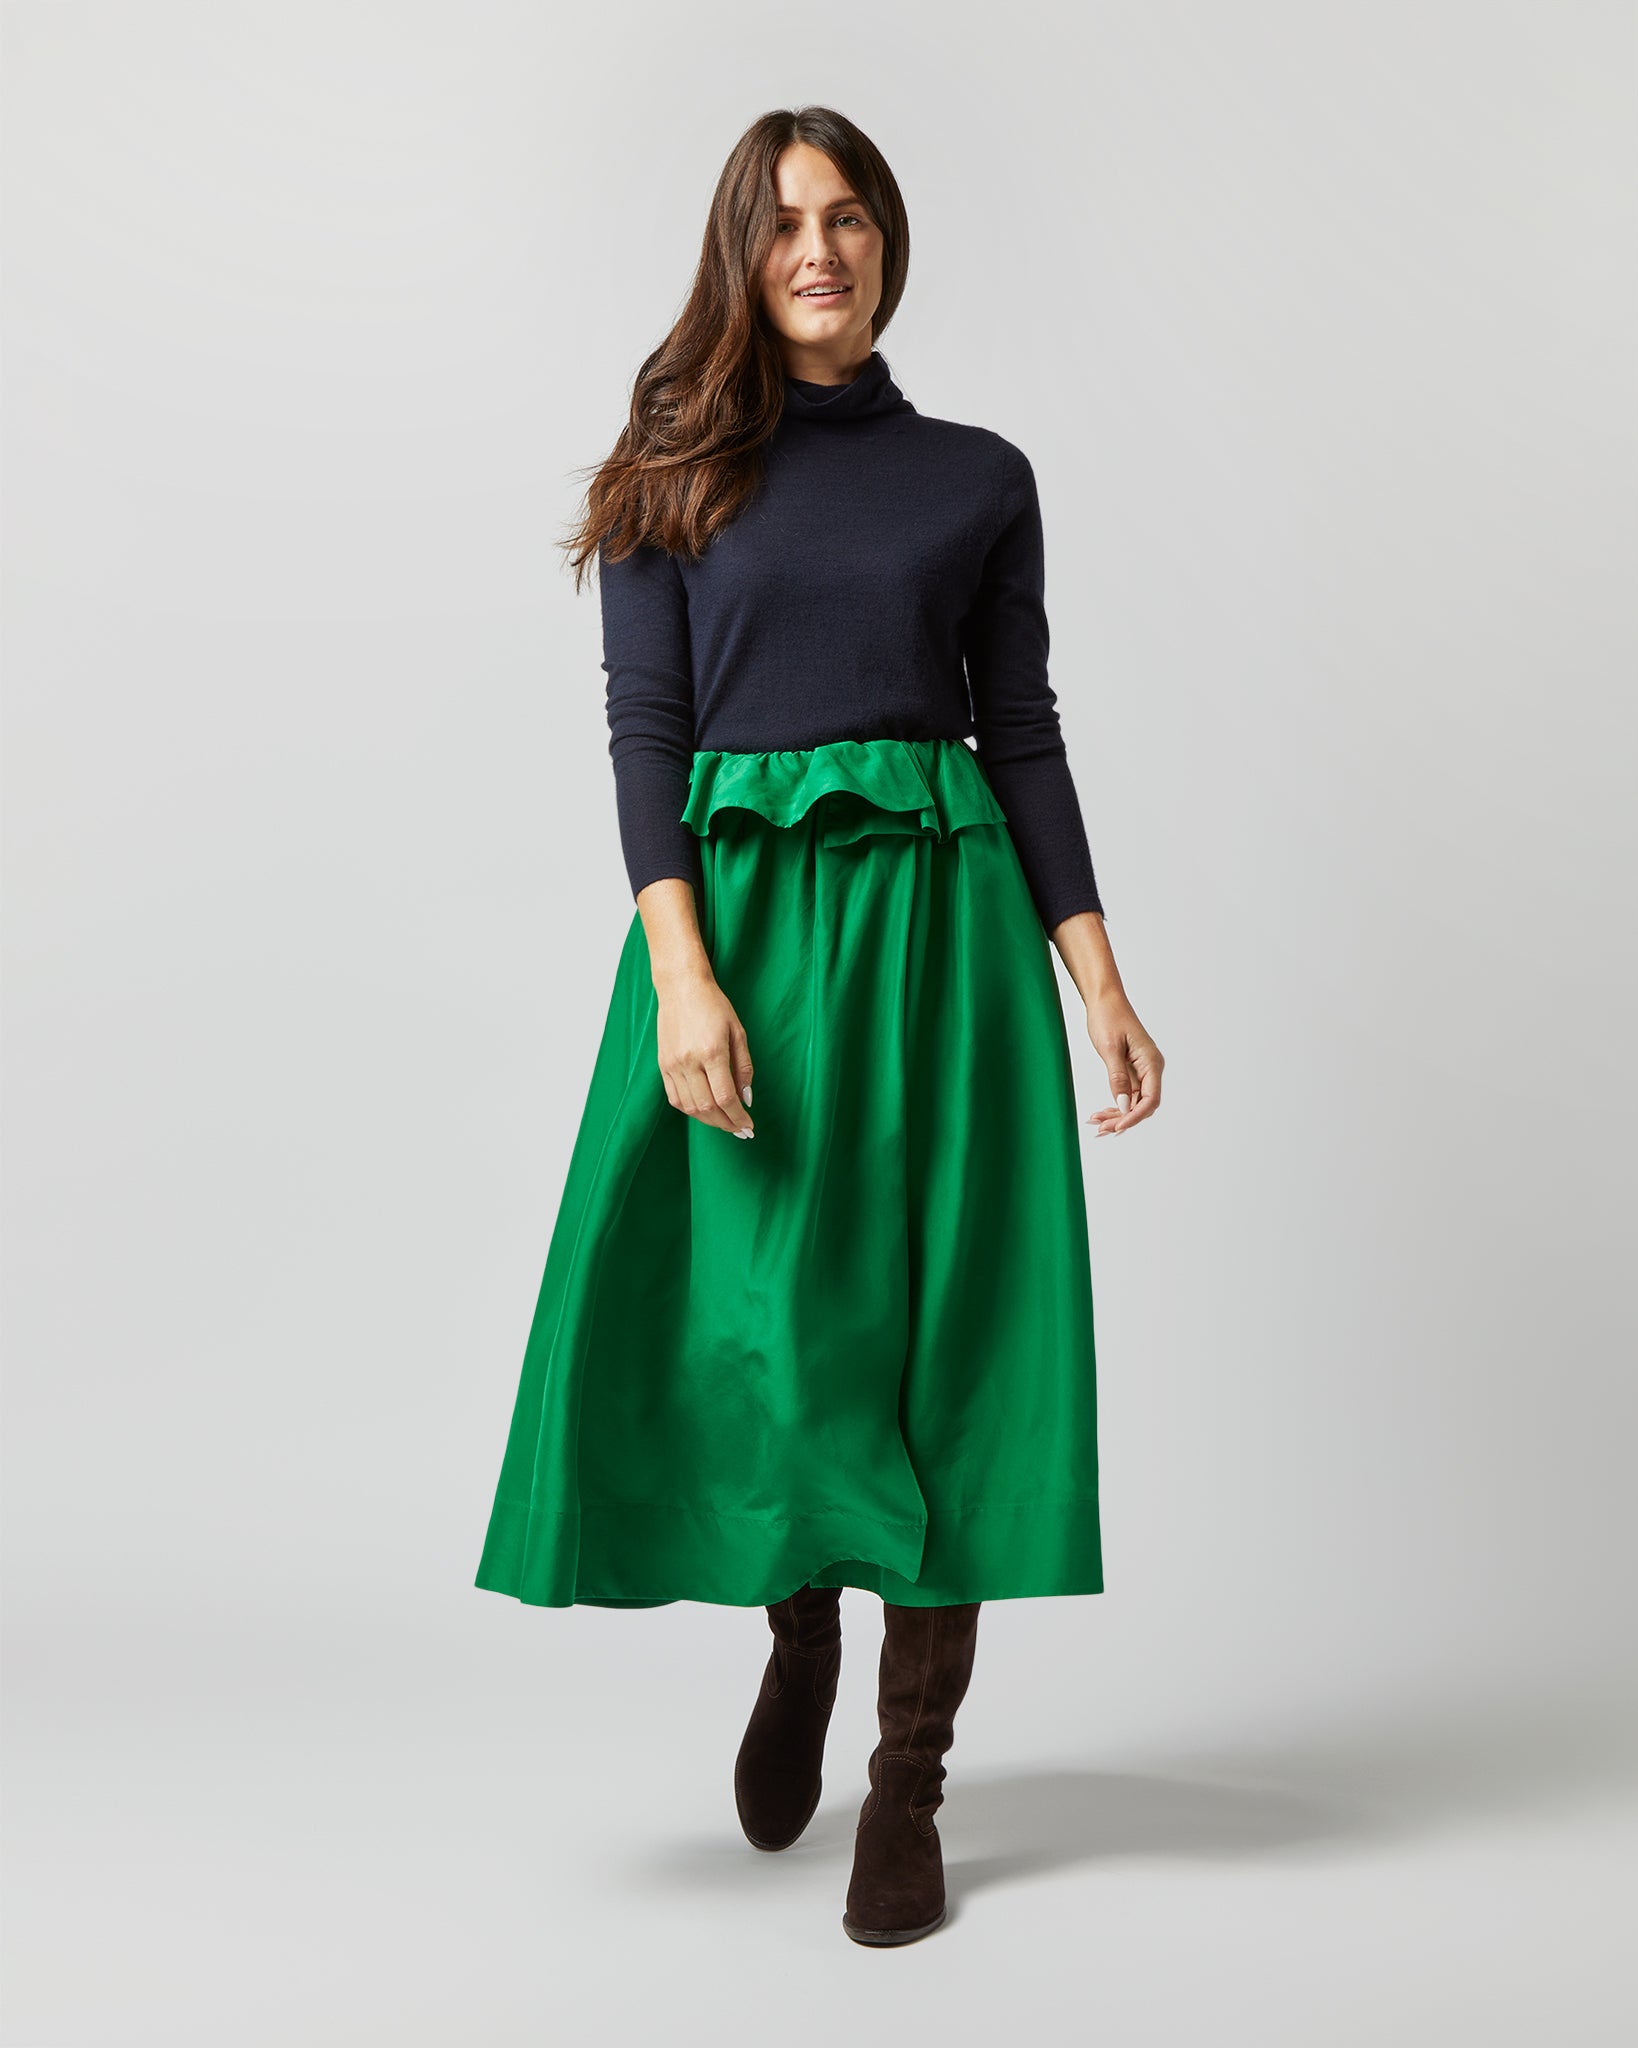 Ulyssa Skirt in Emerald